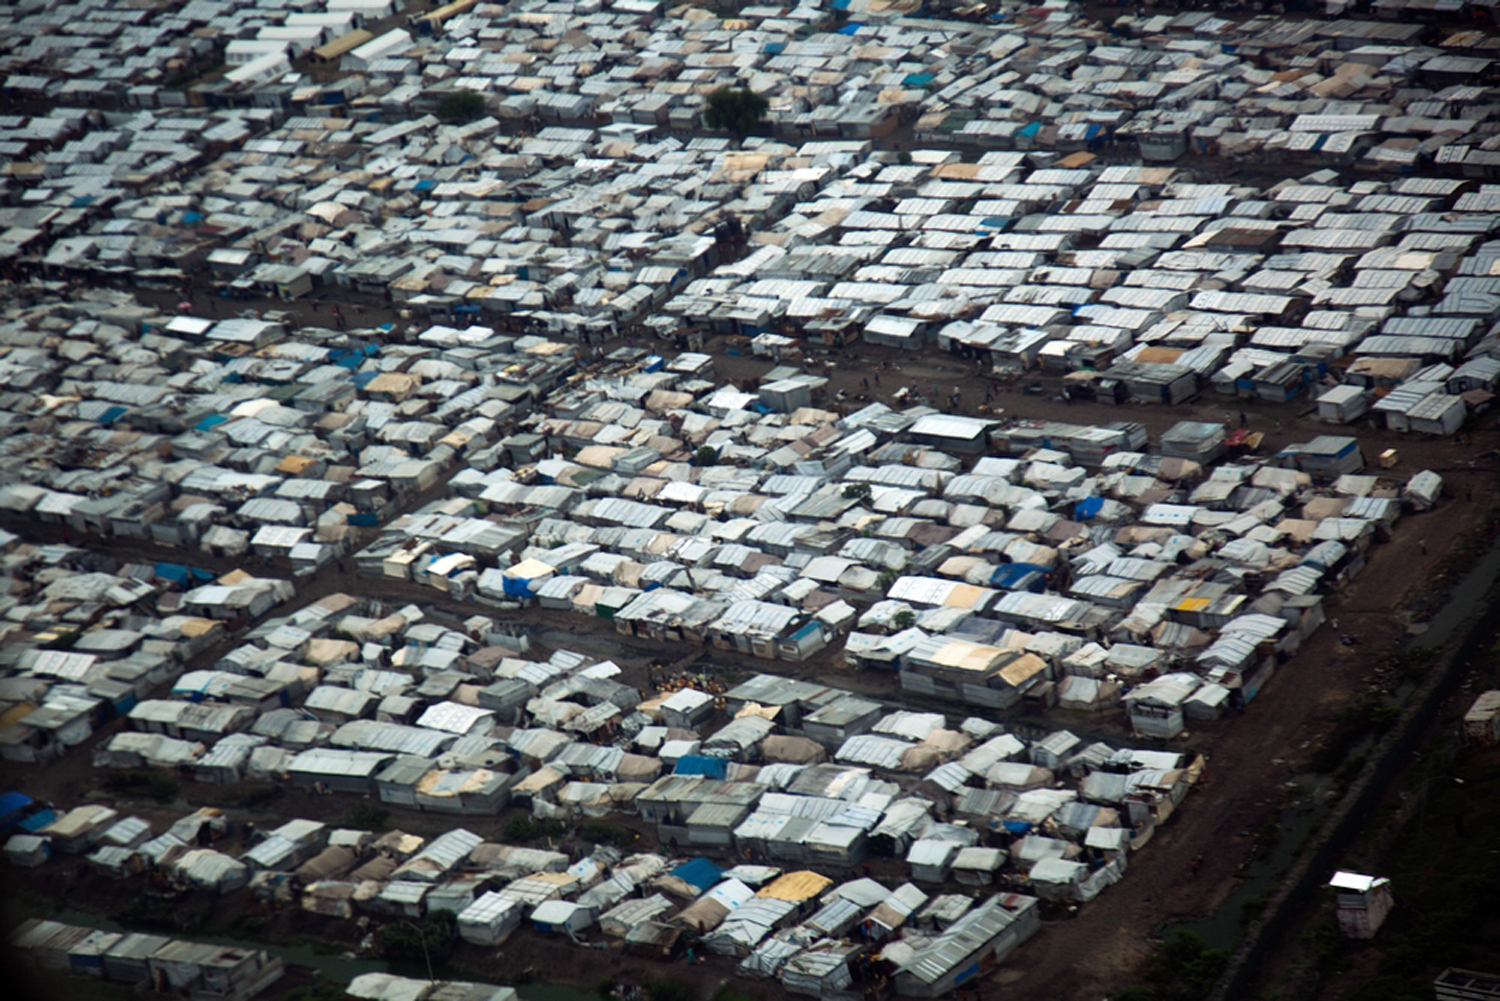 Η Ευρώπη δεν είναι ο κύριος προορισμός για τους πρόσφυγες και τους μετανάστες του κόσμου. © Albert Gonzalez Farran. Εναέρια άποψη του καταυλισμού στο Μαλακάλ, Νότιο Σουδάν